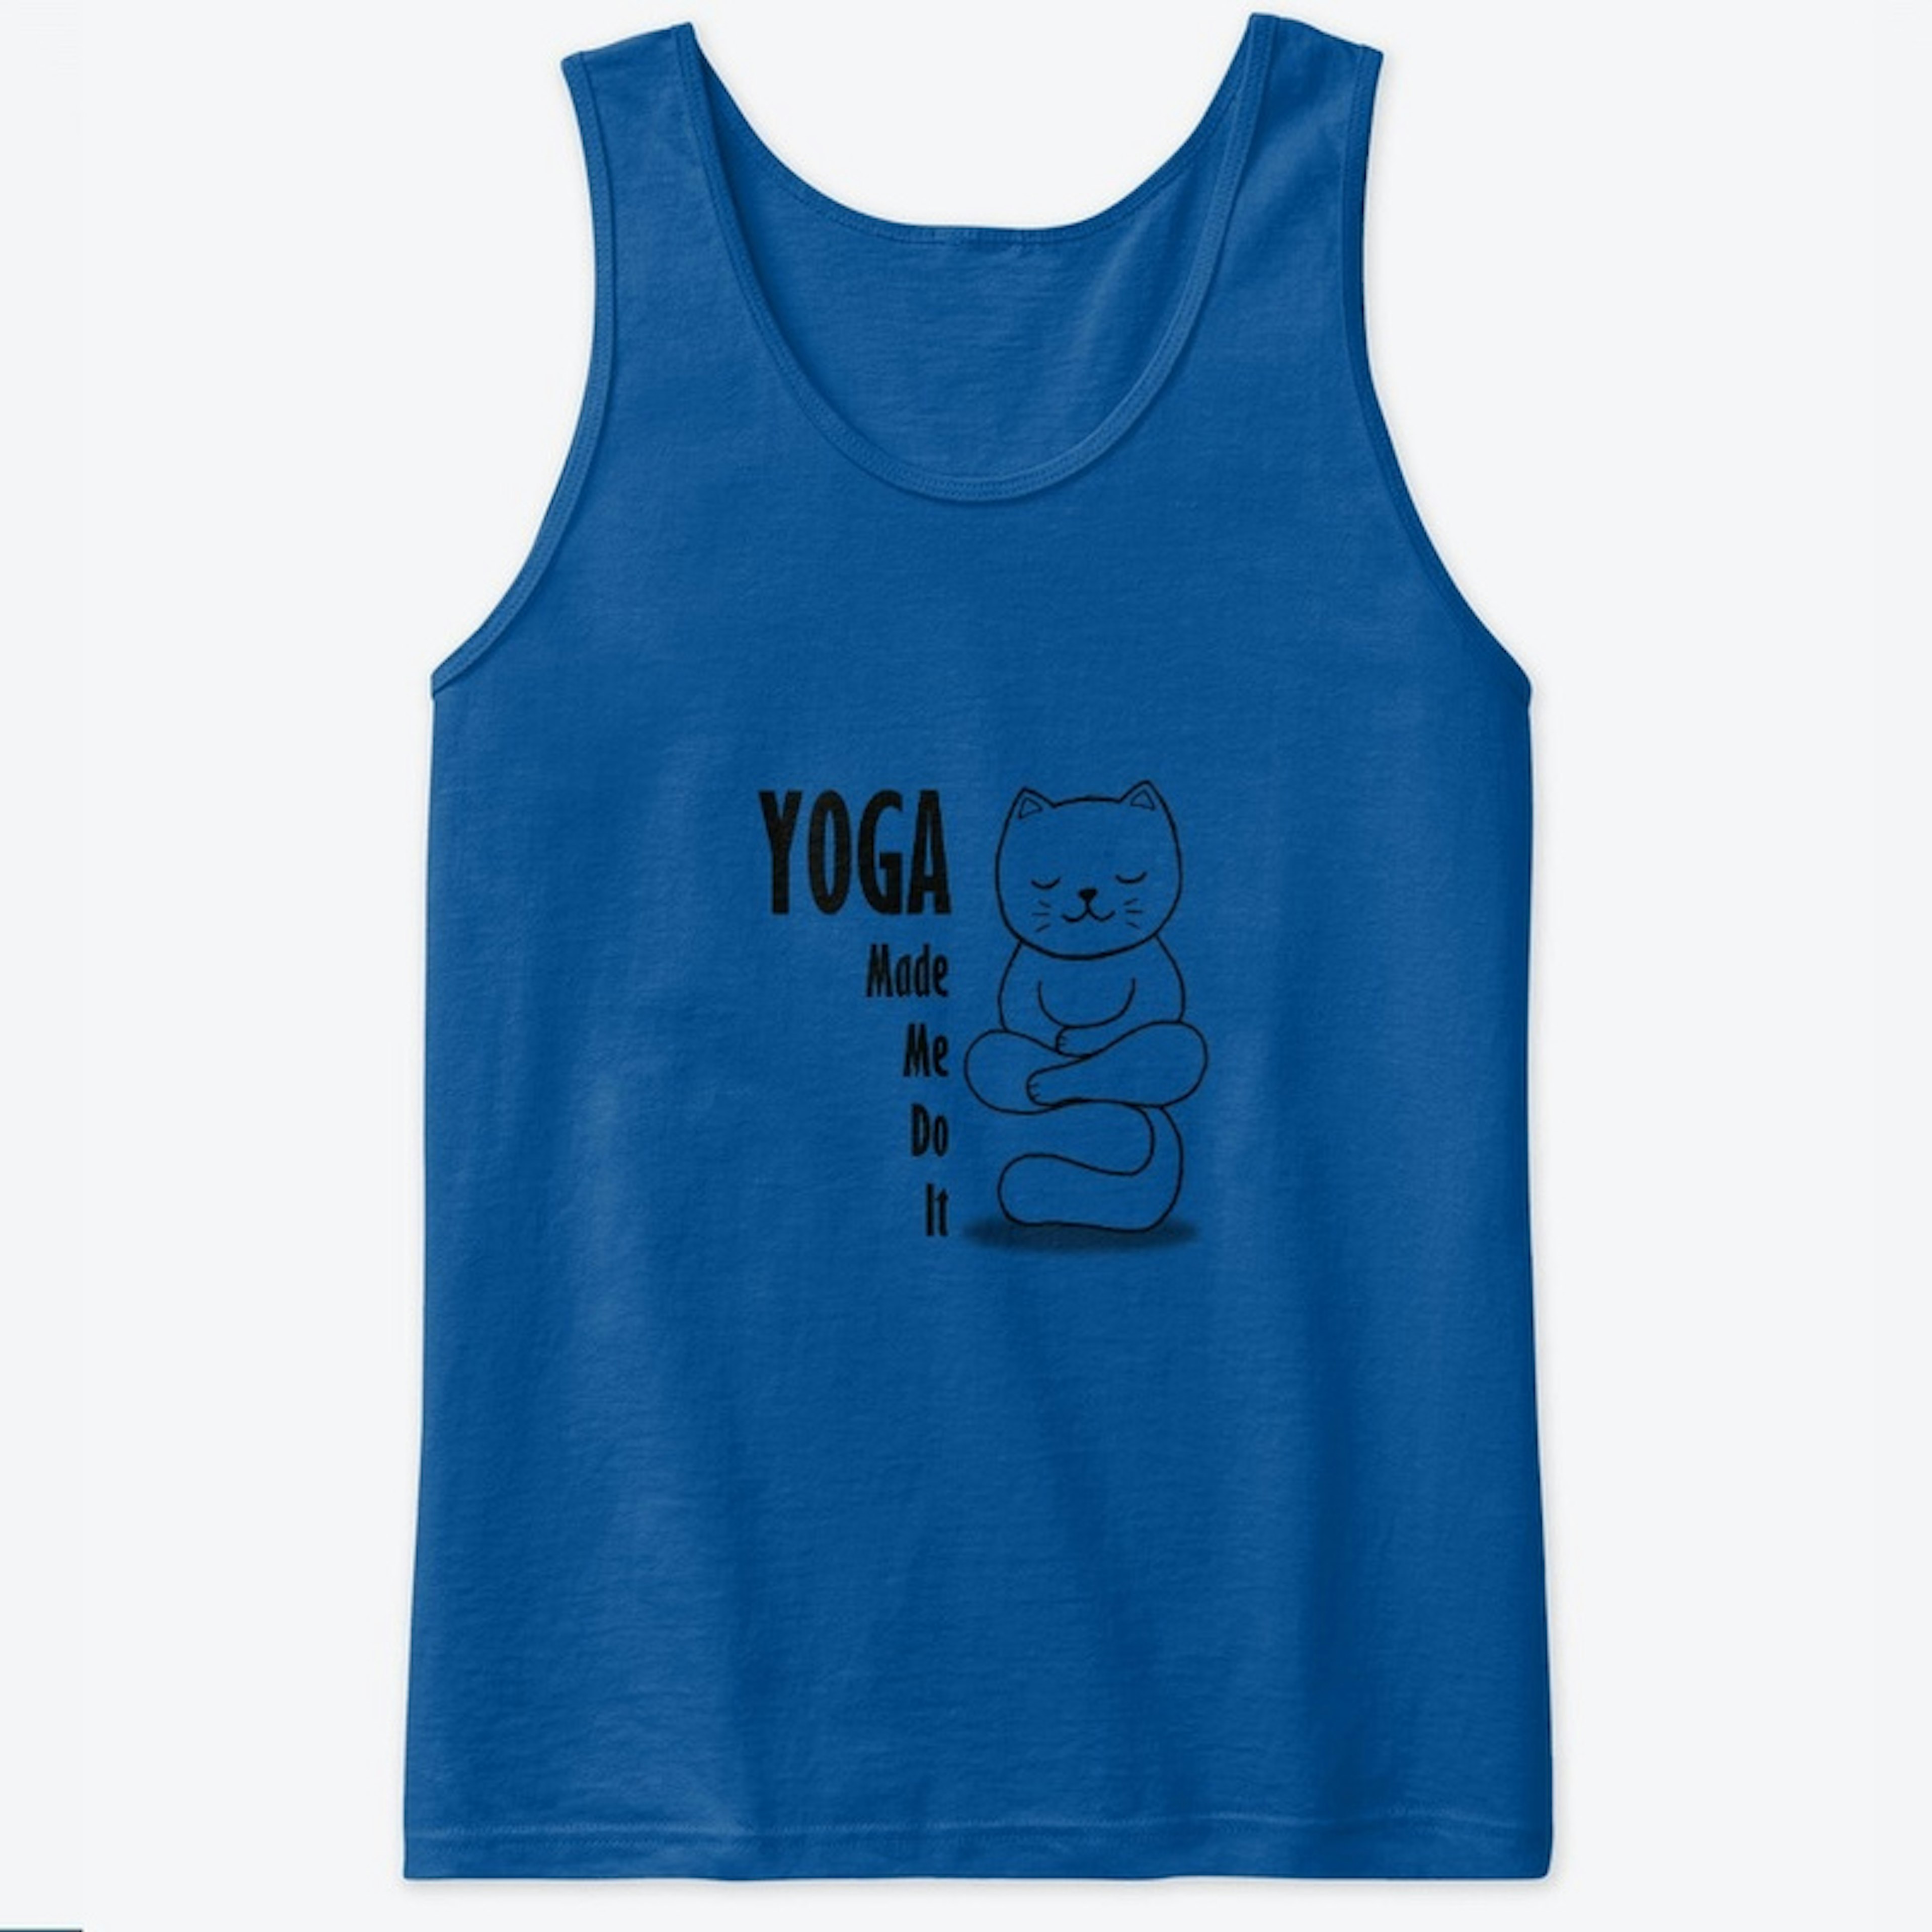 Yoga Made me do it - cat design